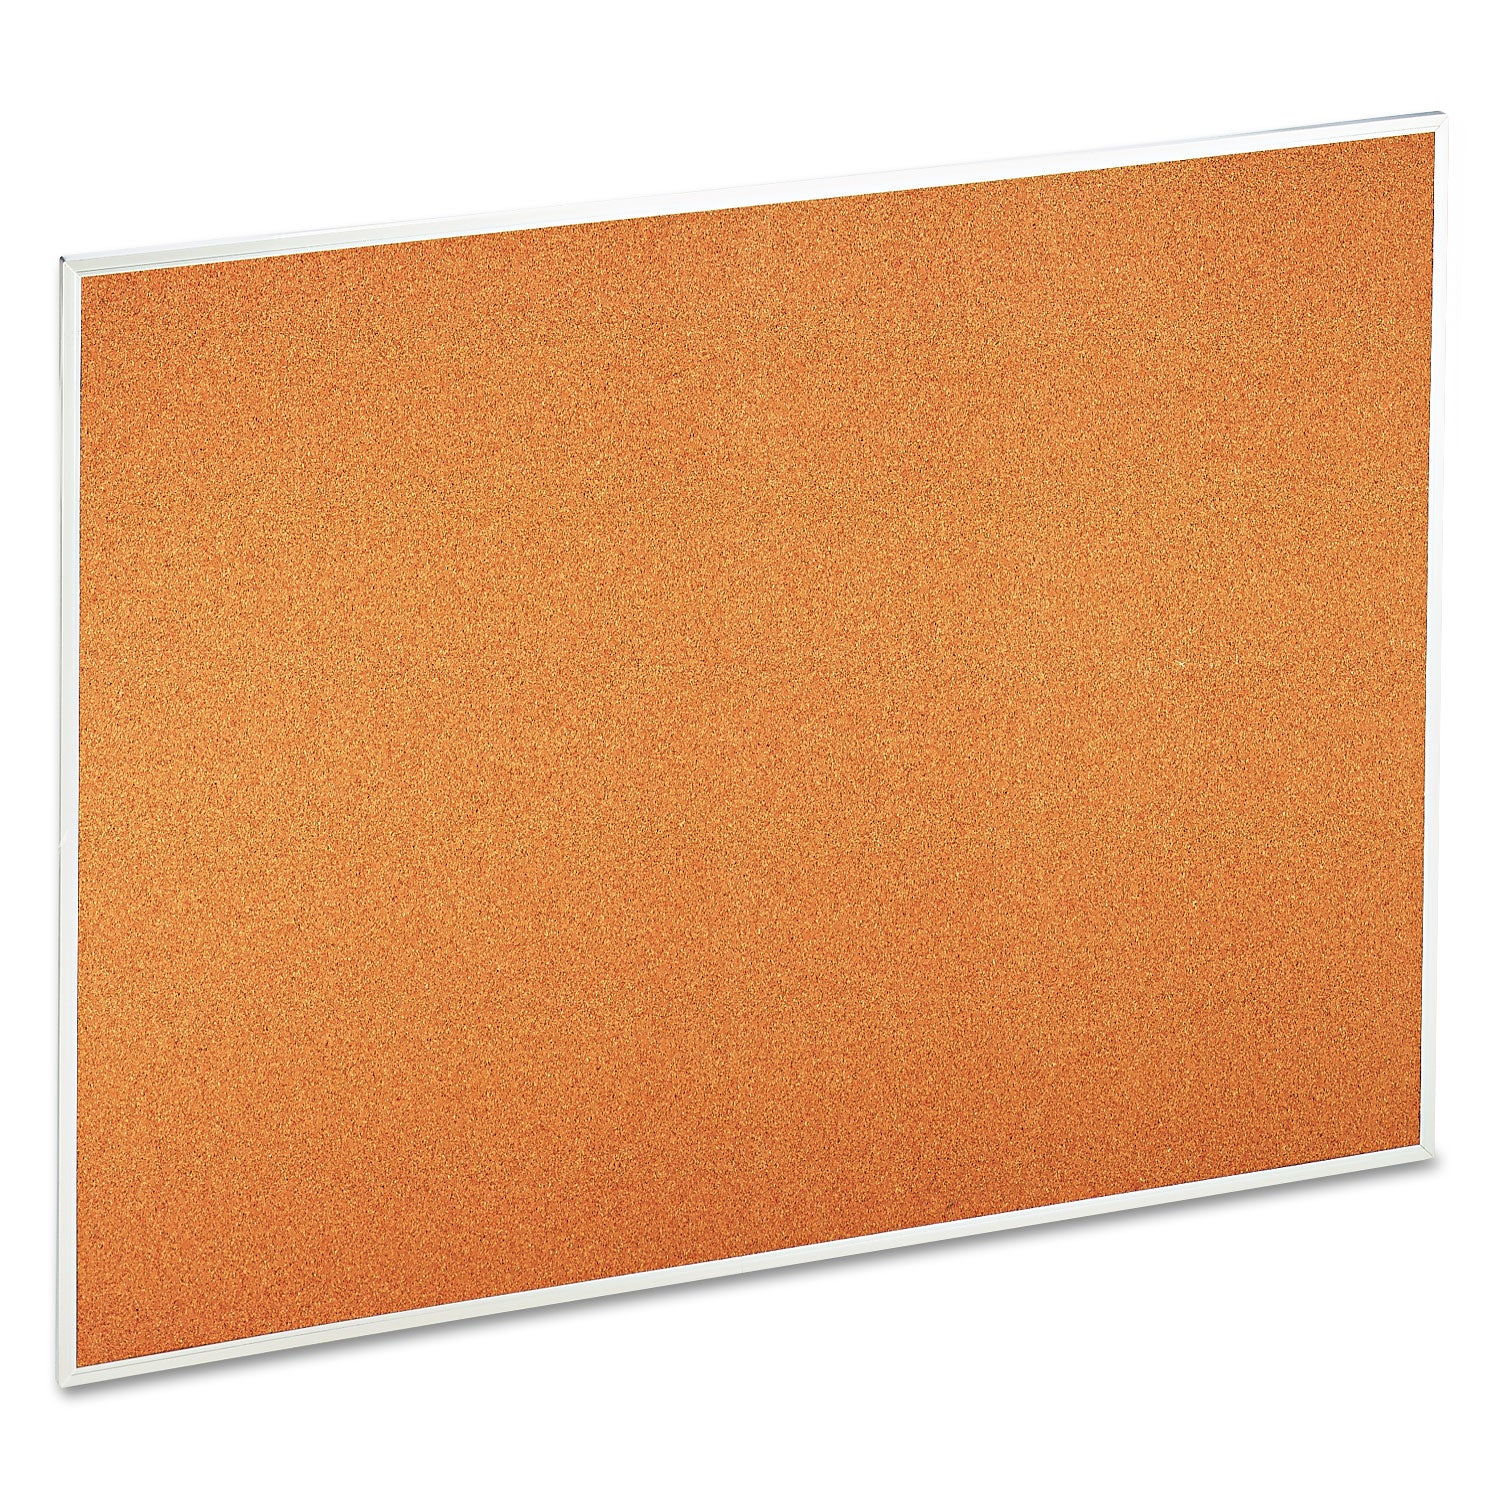 Cork Bulletin Board, 48 x 36, Tan Surface, Aluminum Frame - 